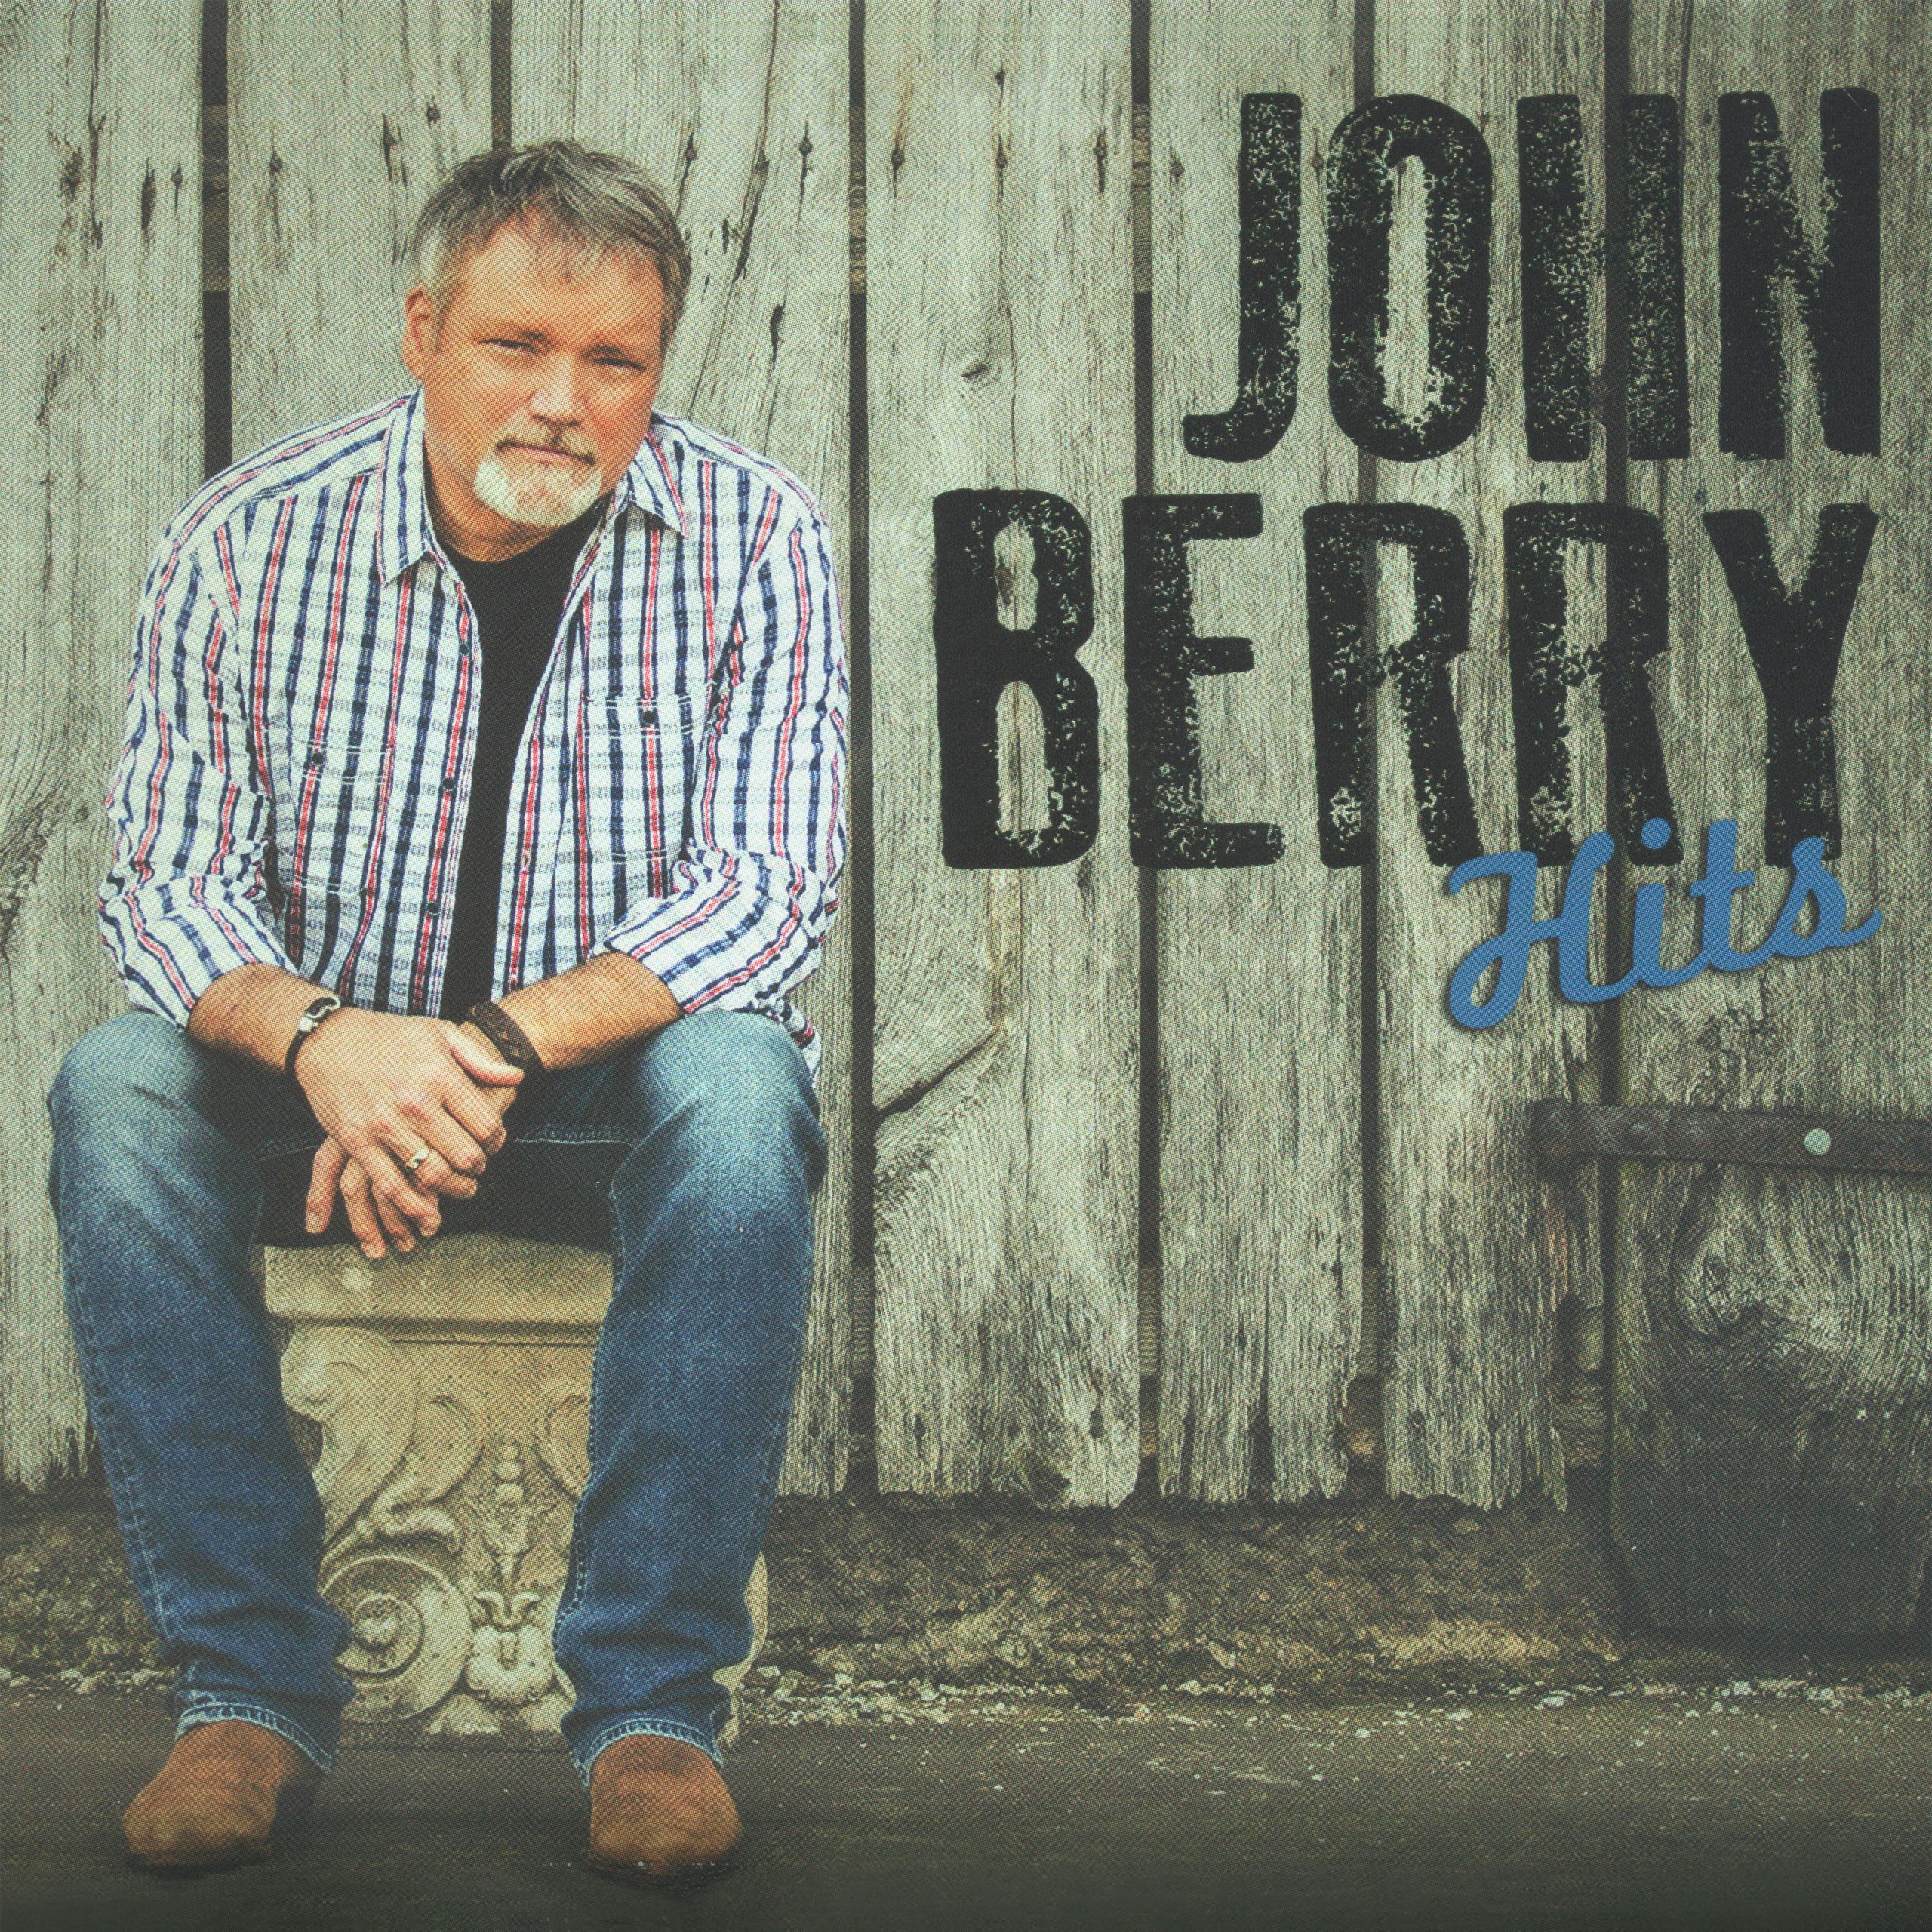 John-Berry-Hits-scaled.jpg